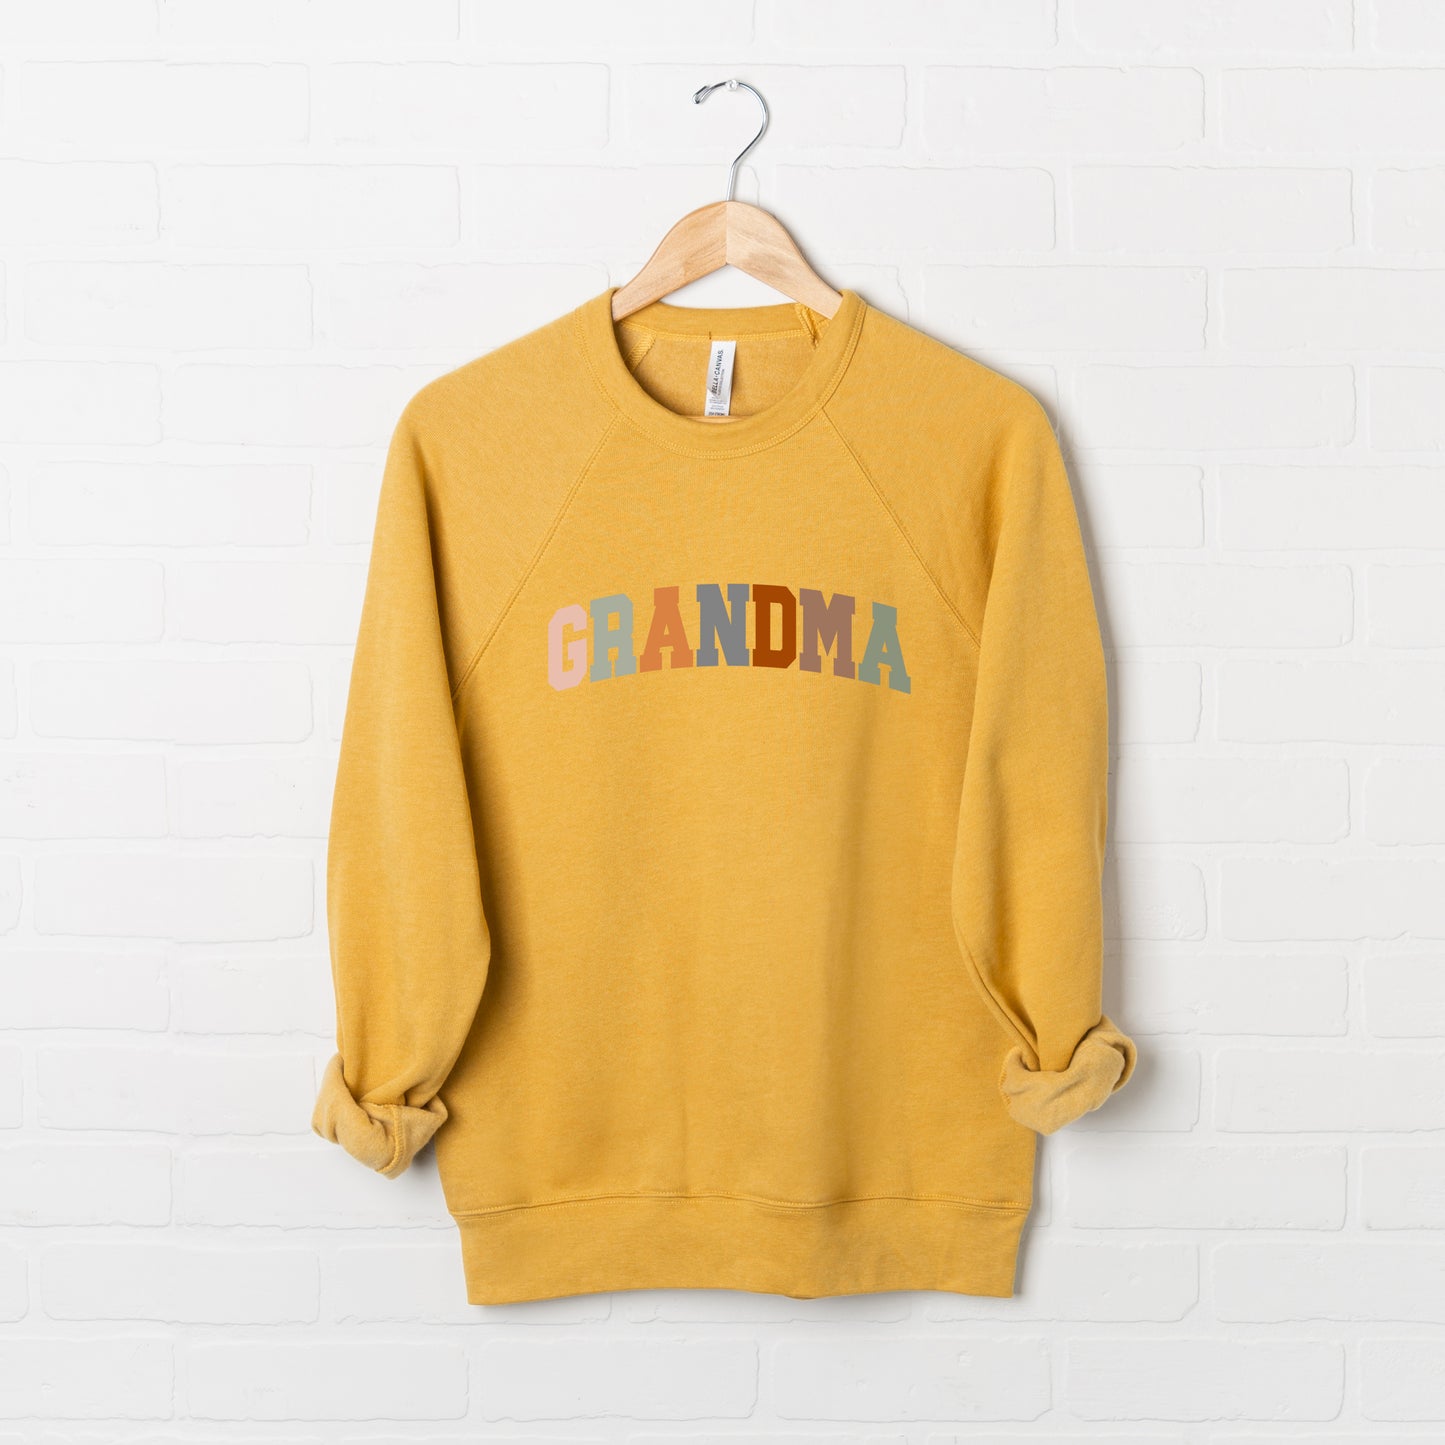 Grandma Colorful | Bella Canvas Sweatshirt